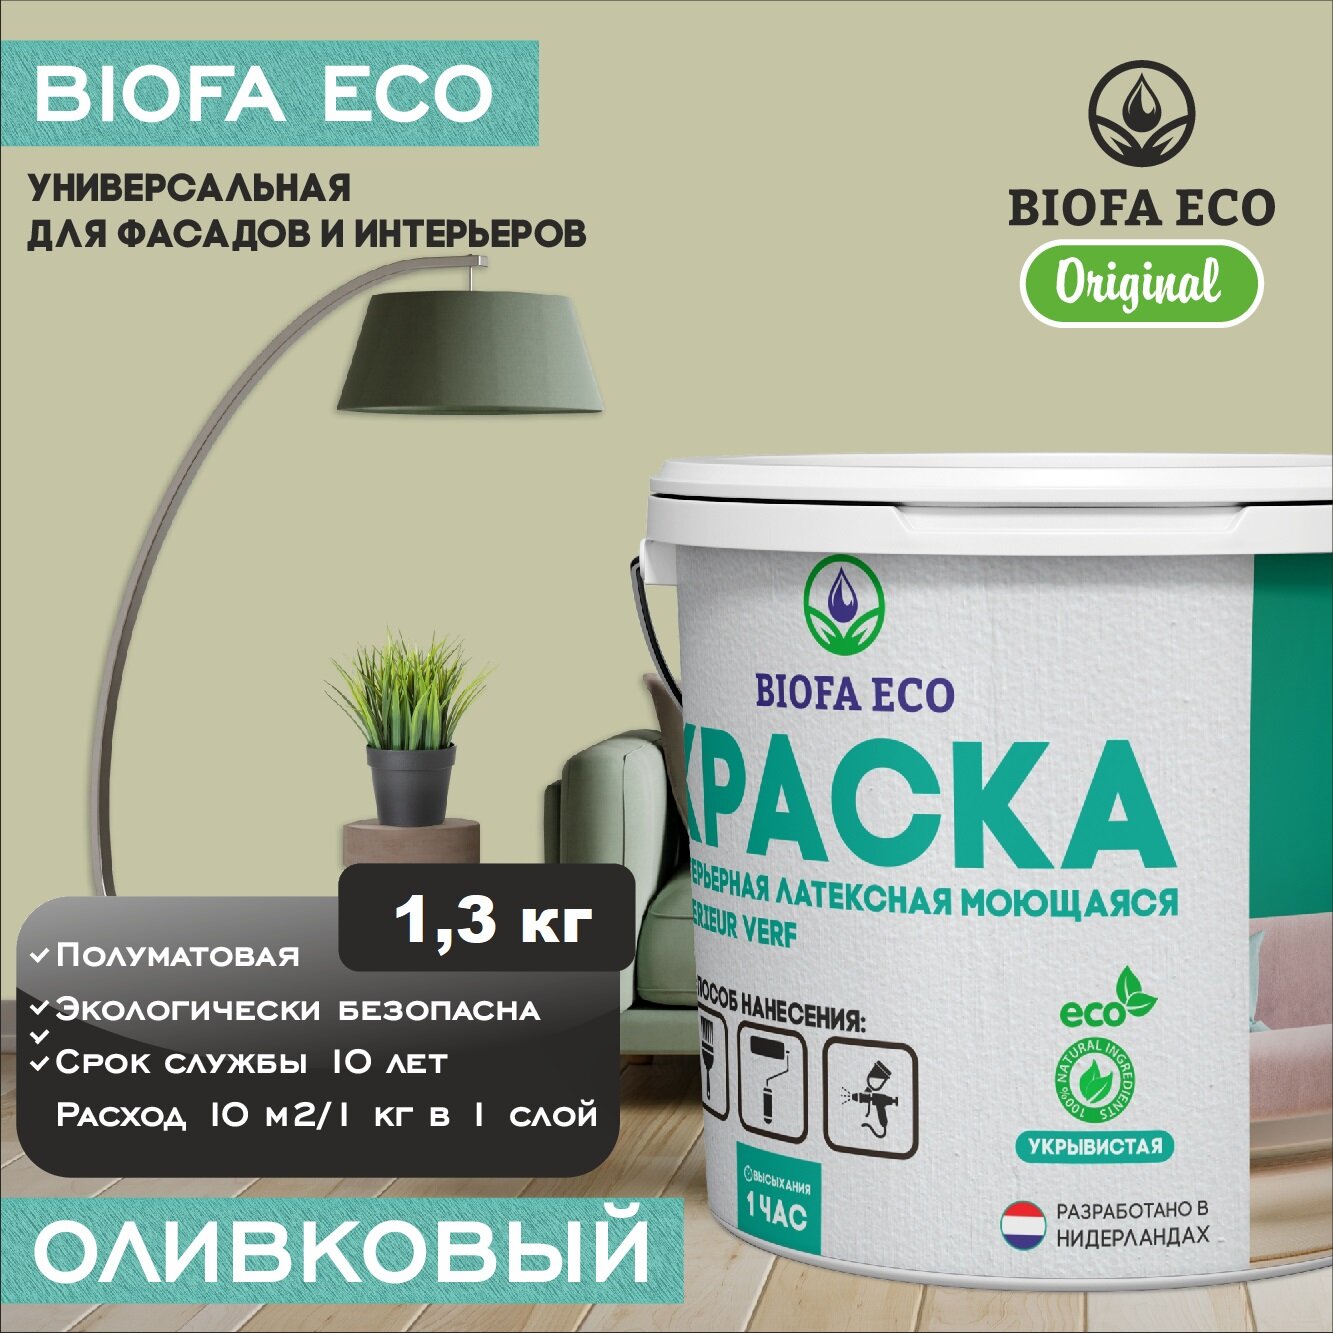 Краска BIOFA ECO универсальная (интерьерная и фасадная) влагостойкая моющаяся матовая без запаха, цвет Оливковый, 1,3 кг